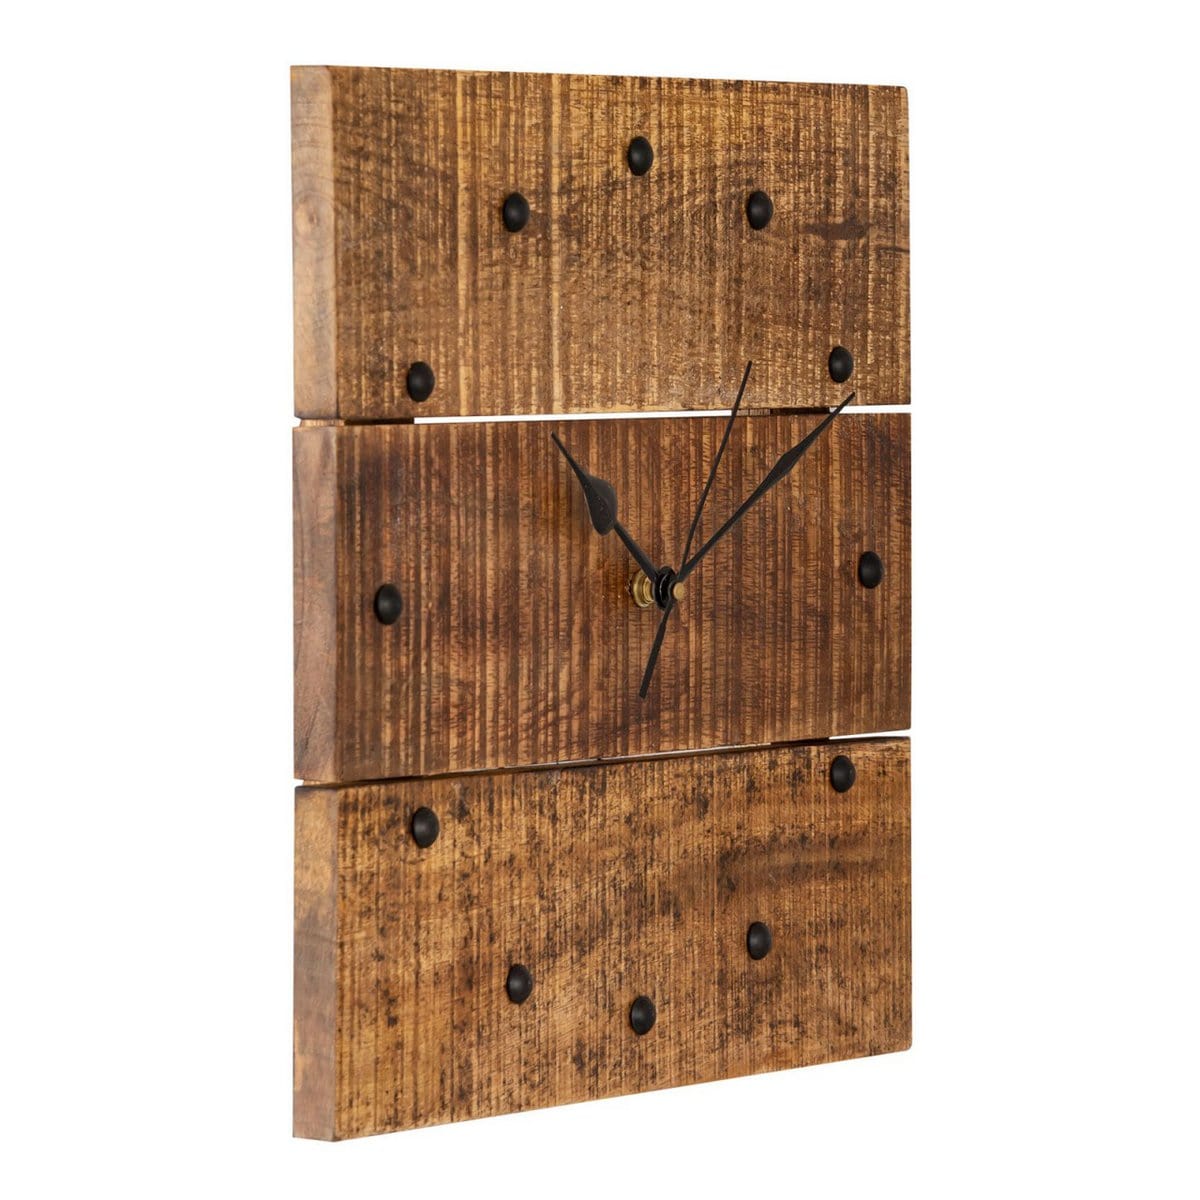 Voglrieder kreatives Wohnen Wandklok houten klok 30x30cm wandklok hout woonkamer geruisloos vierkant gemaakt van mangohout